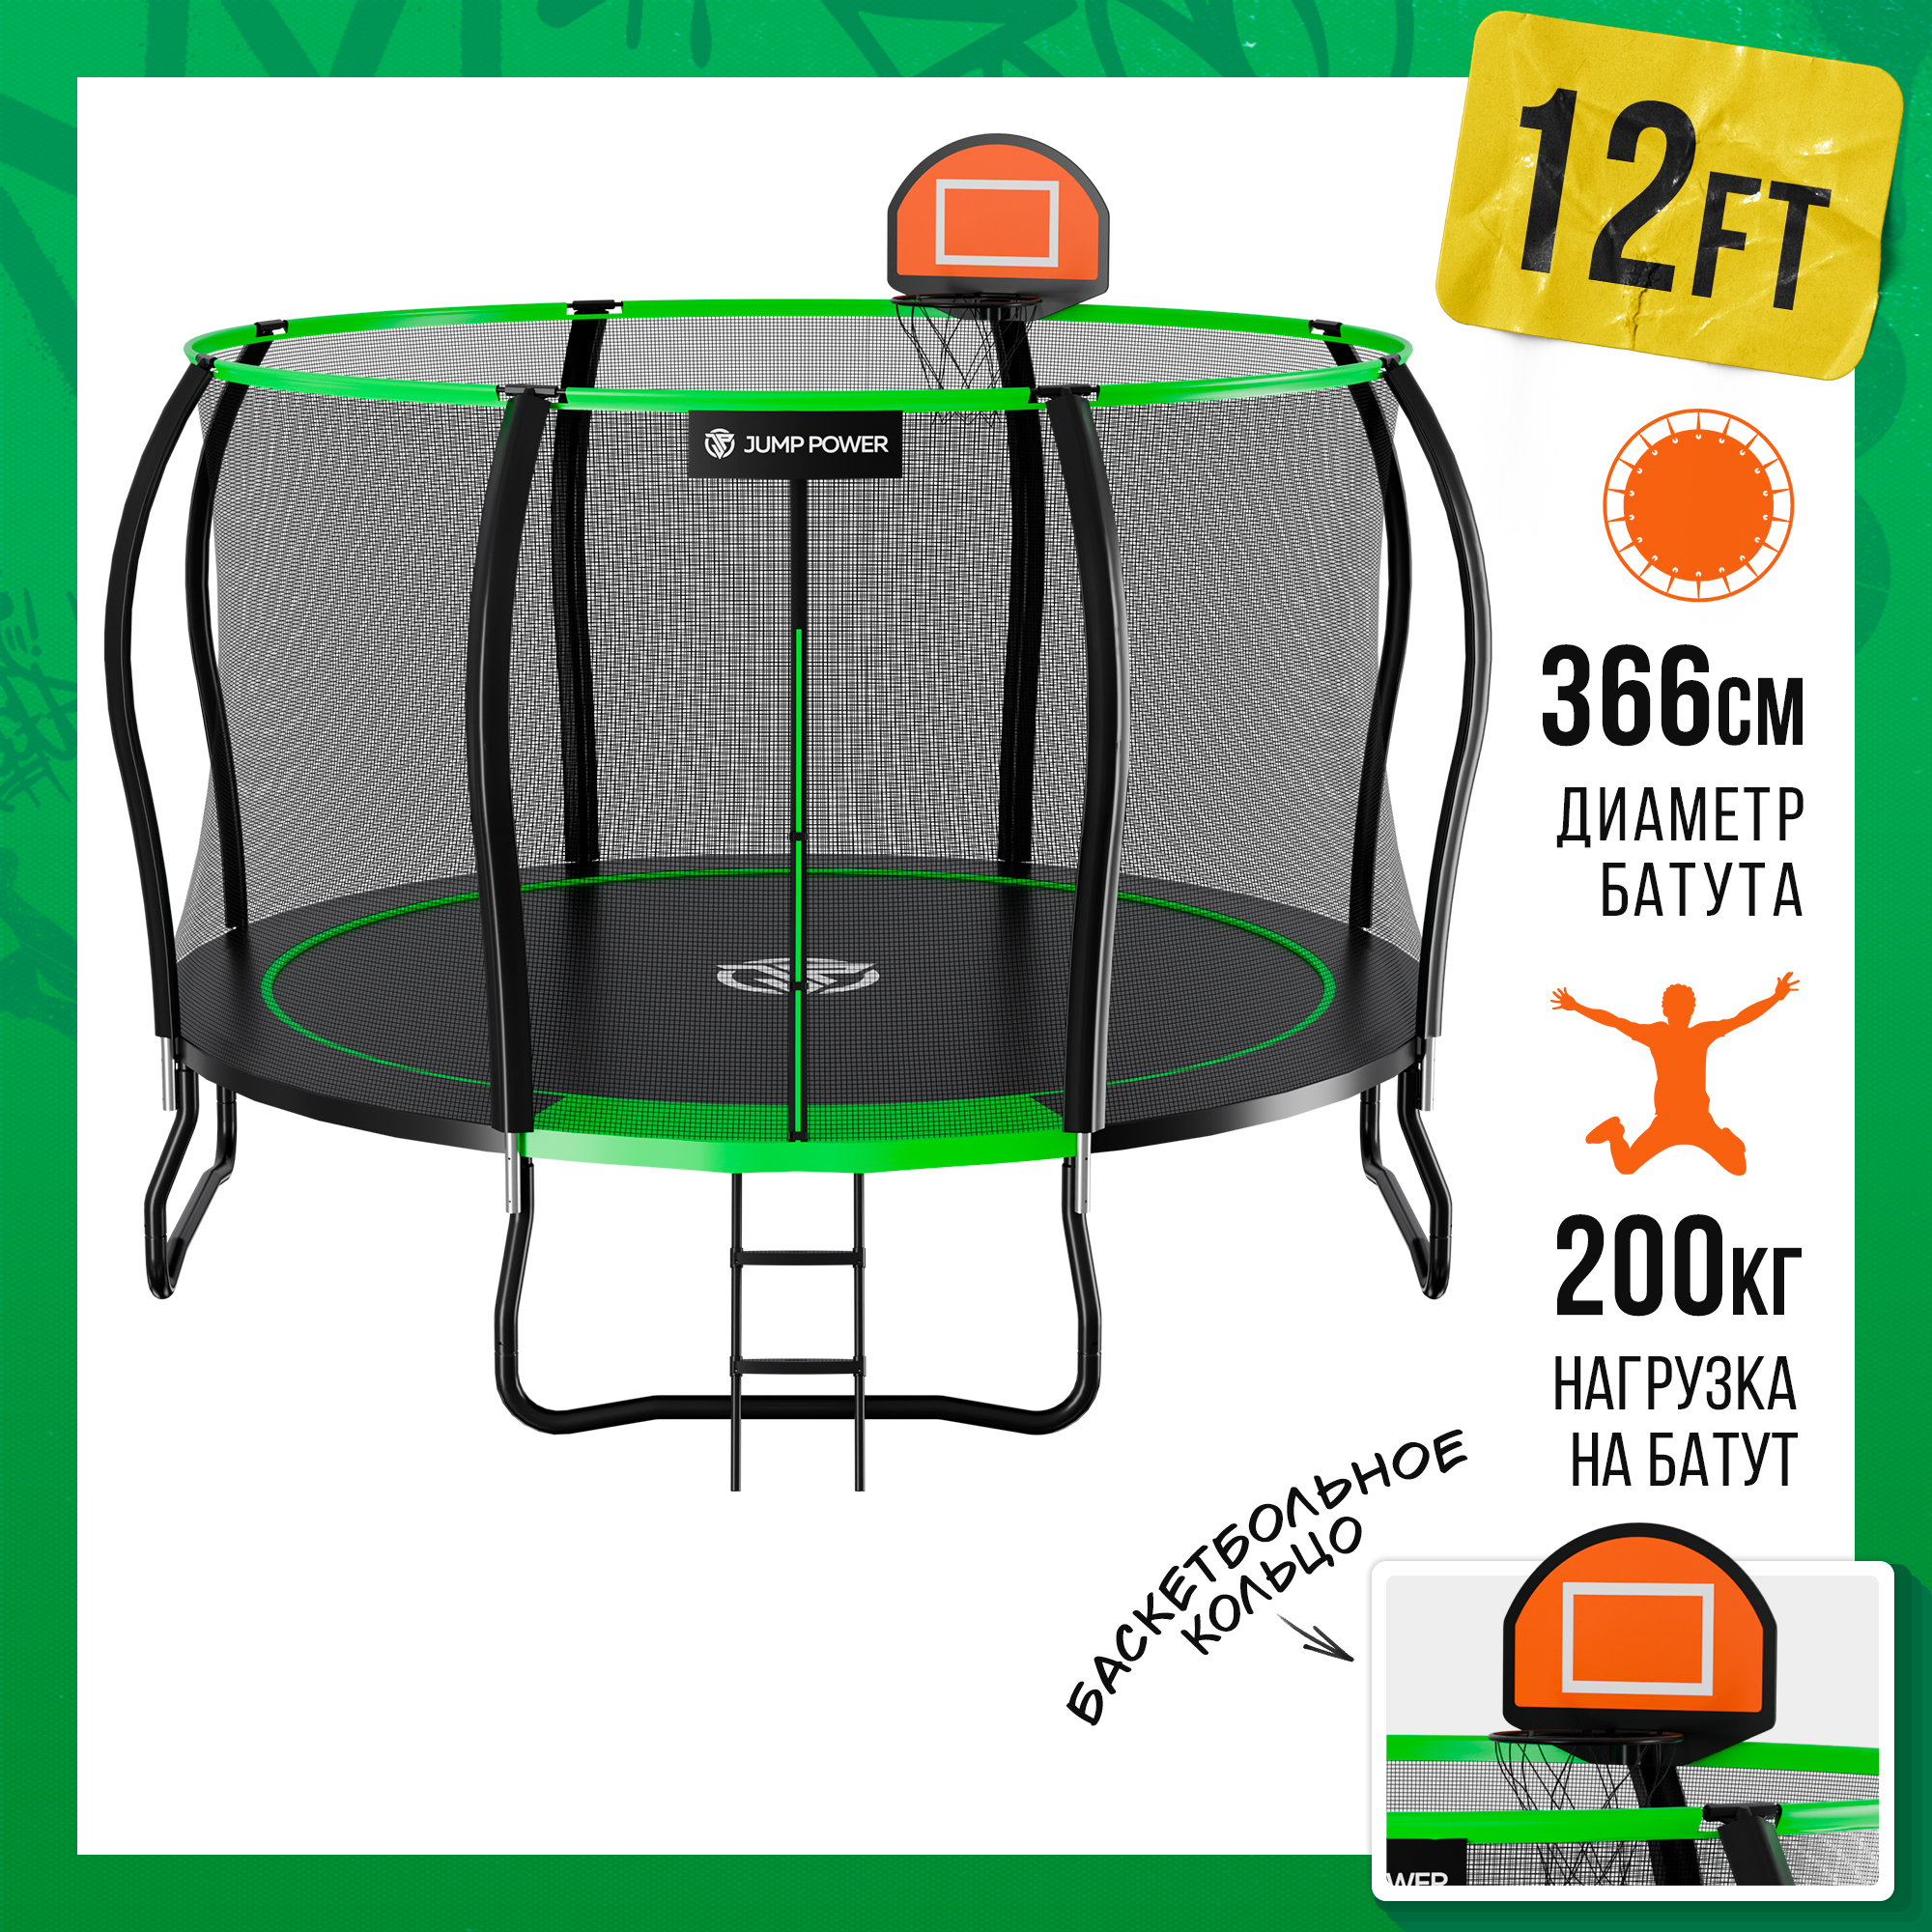 Батут каркасный Stable Point 12FT Green 366 см Вес до 200кг + баскетбольное кольцо и мяч